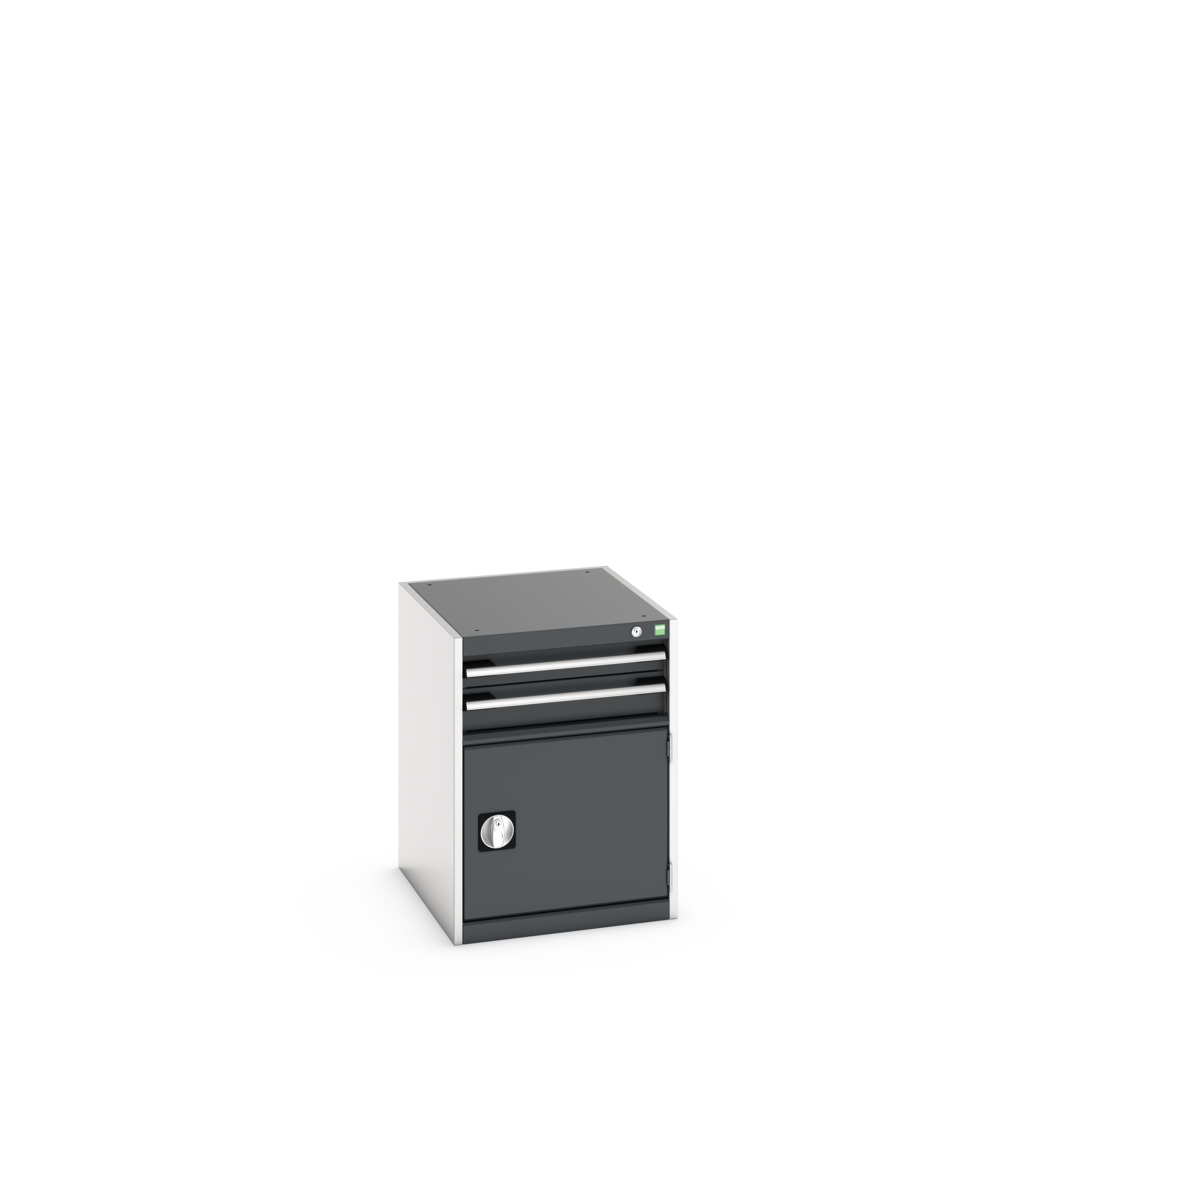 40018021. - cubio drawer-door cabinet